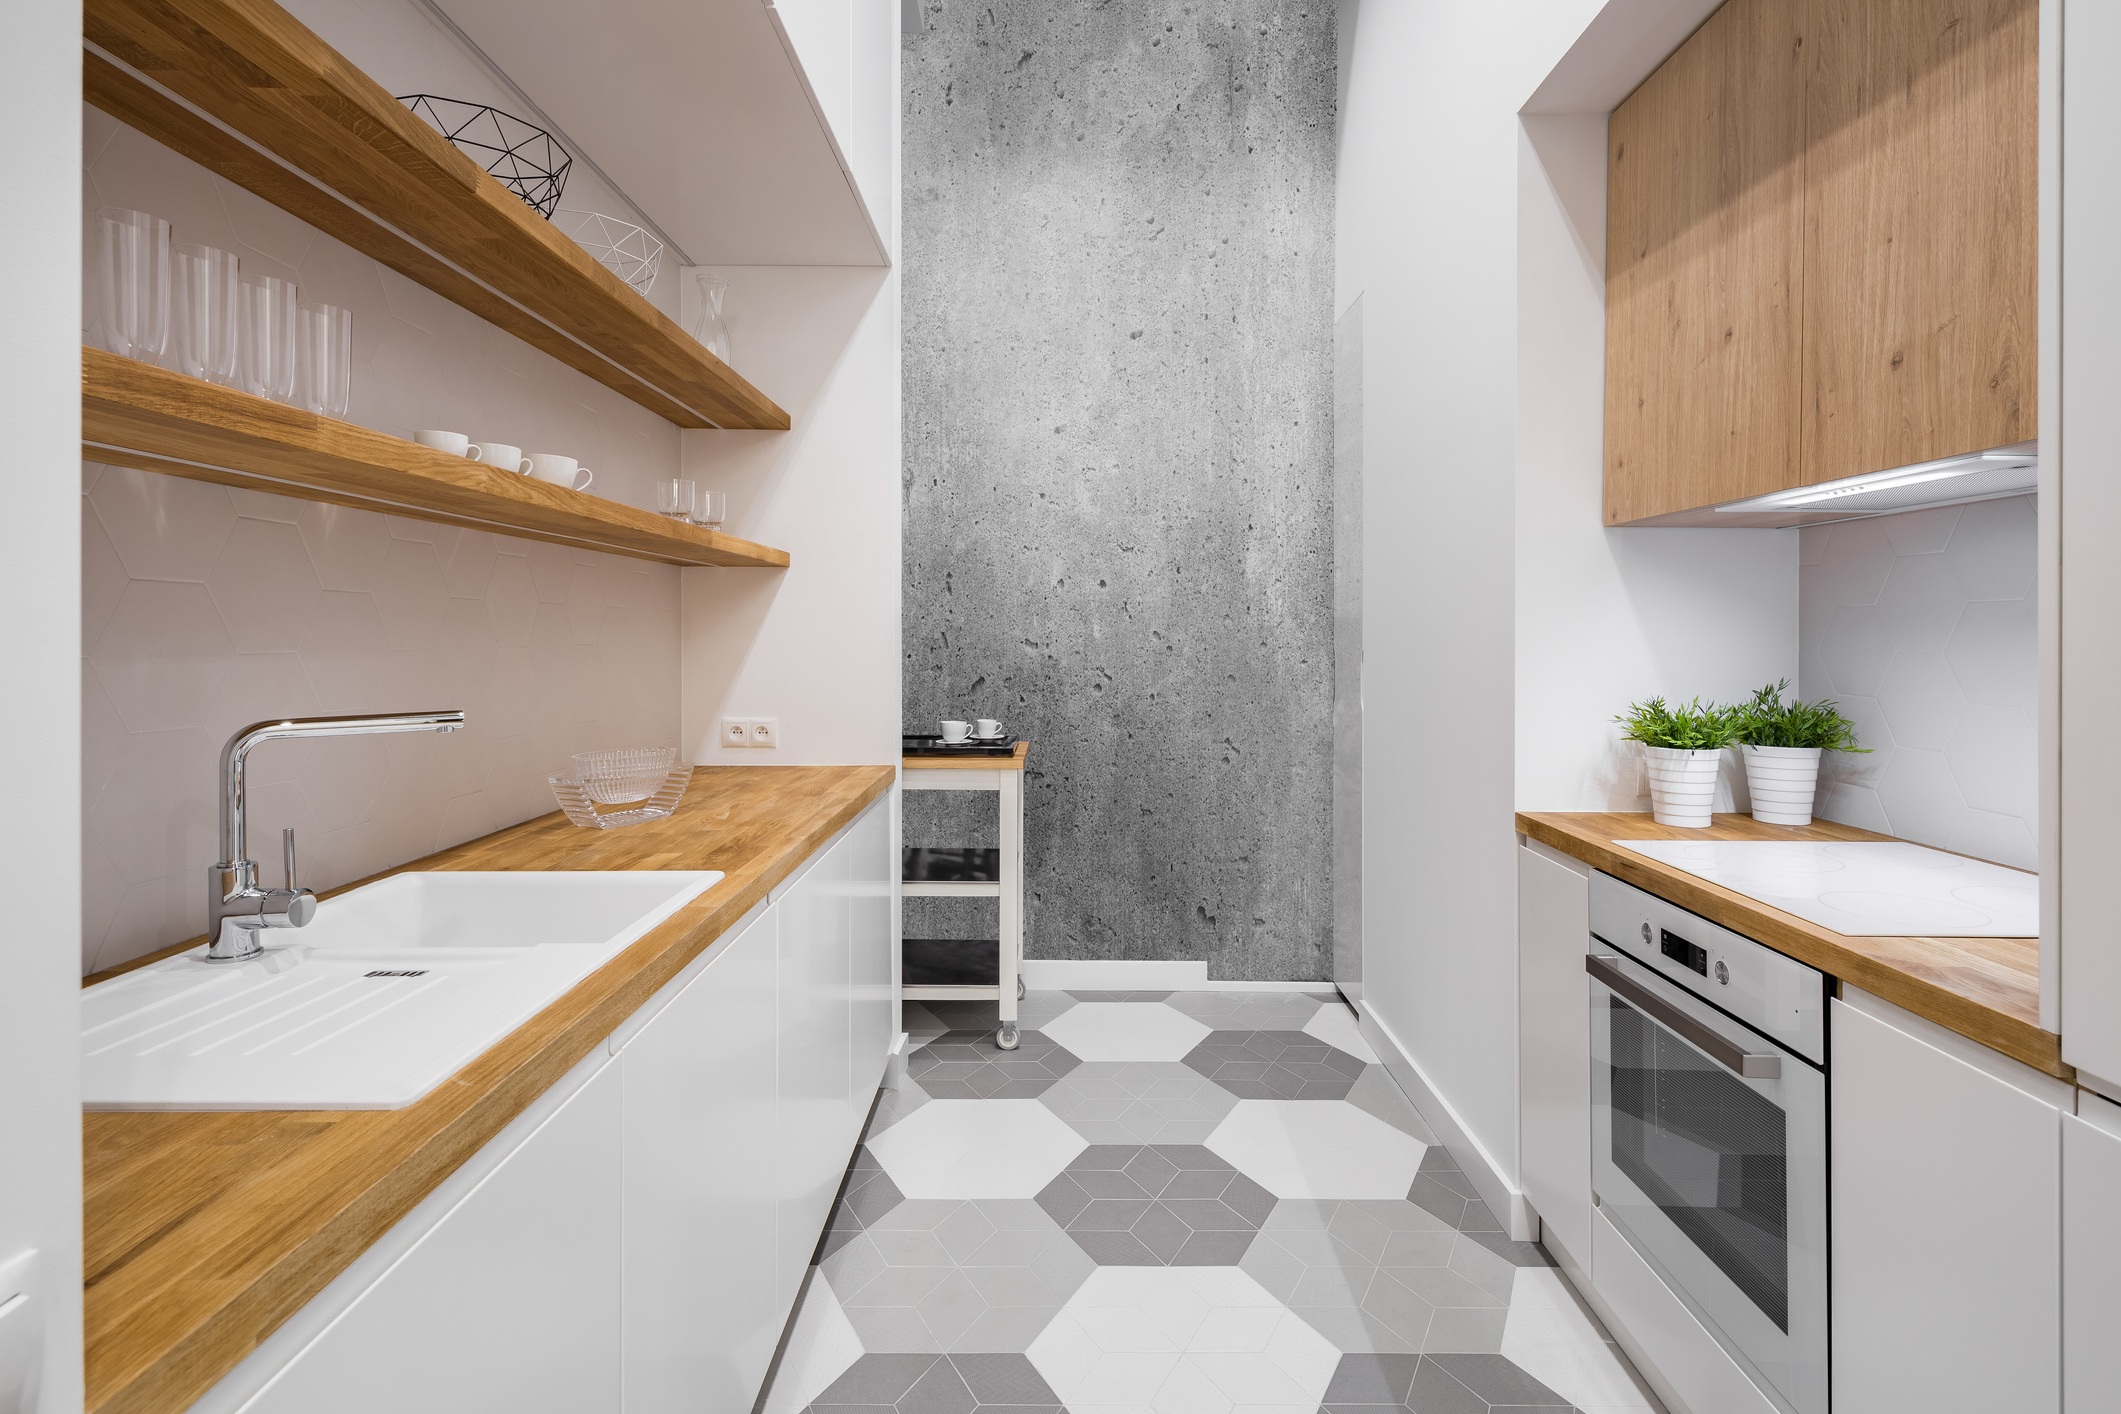 Imagem de uma cozinha branca com prateleiras, bancadas e portas de armários em madeira.